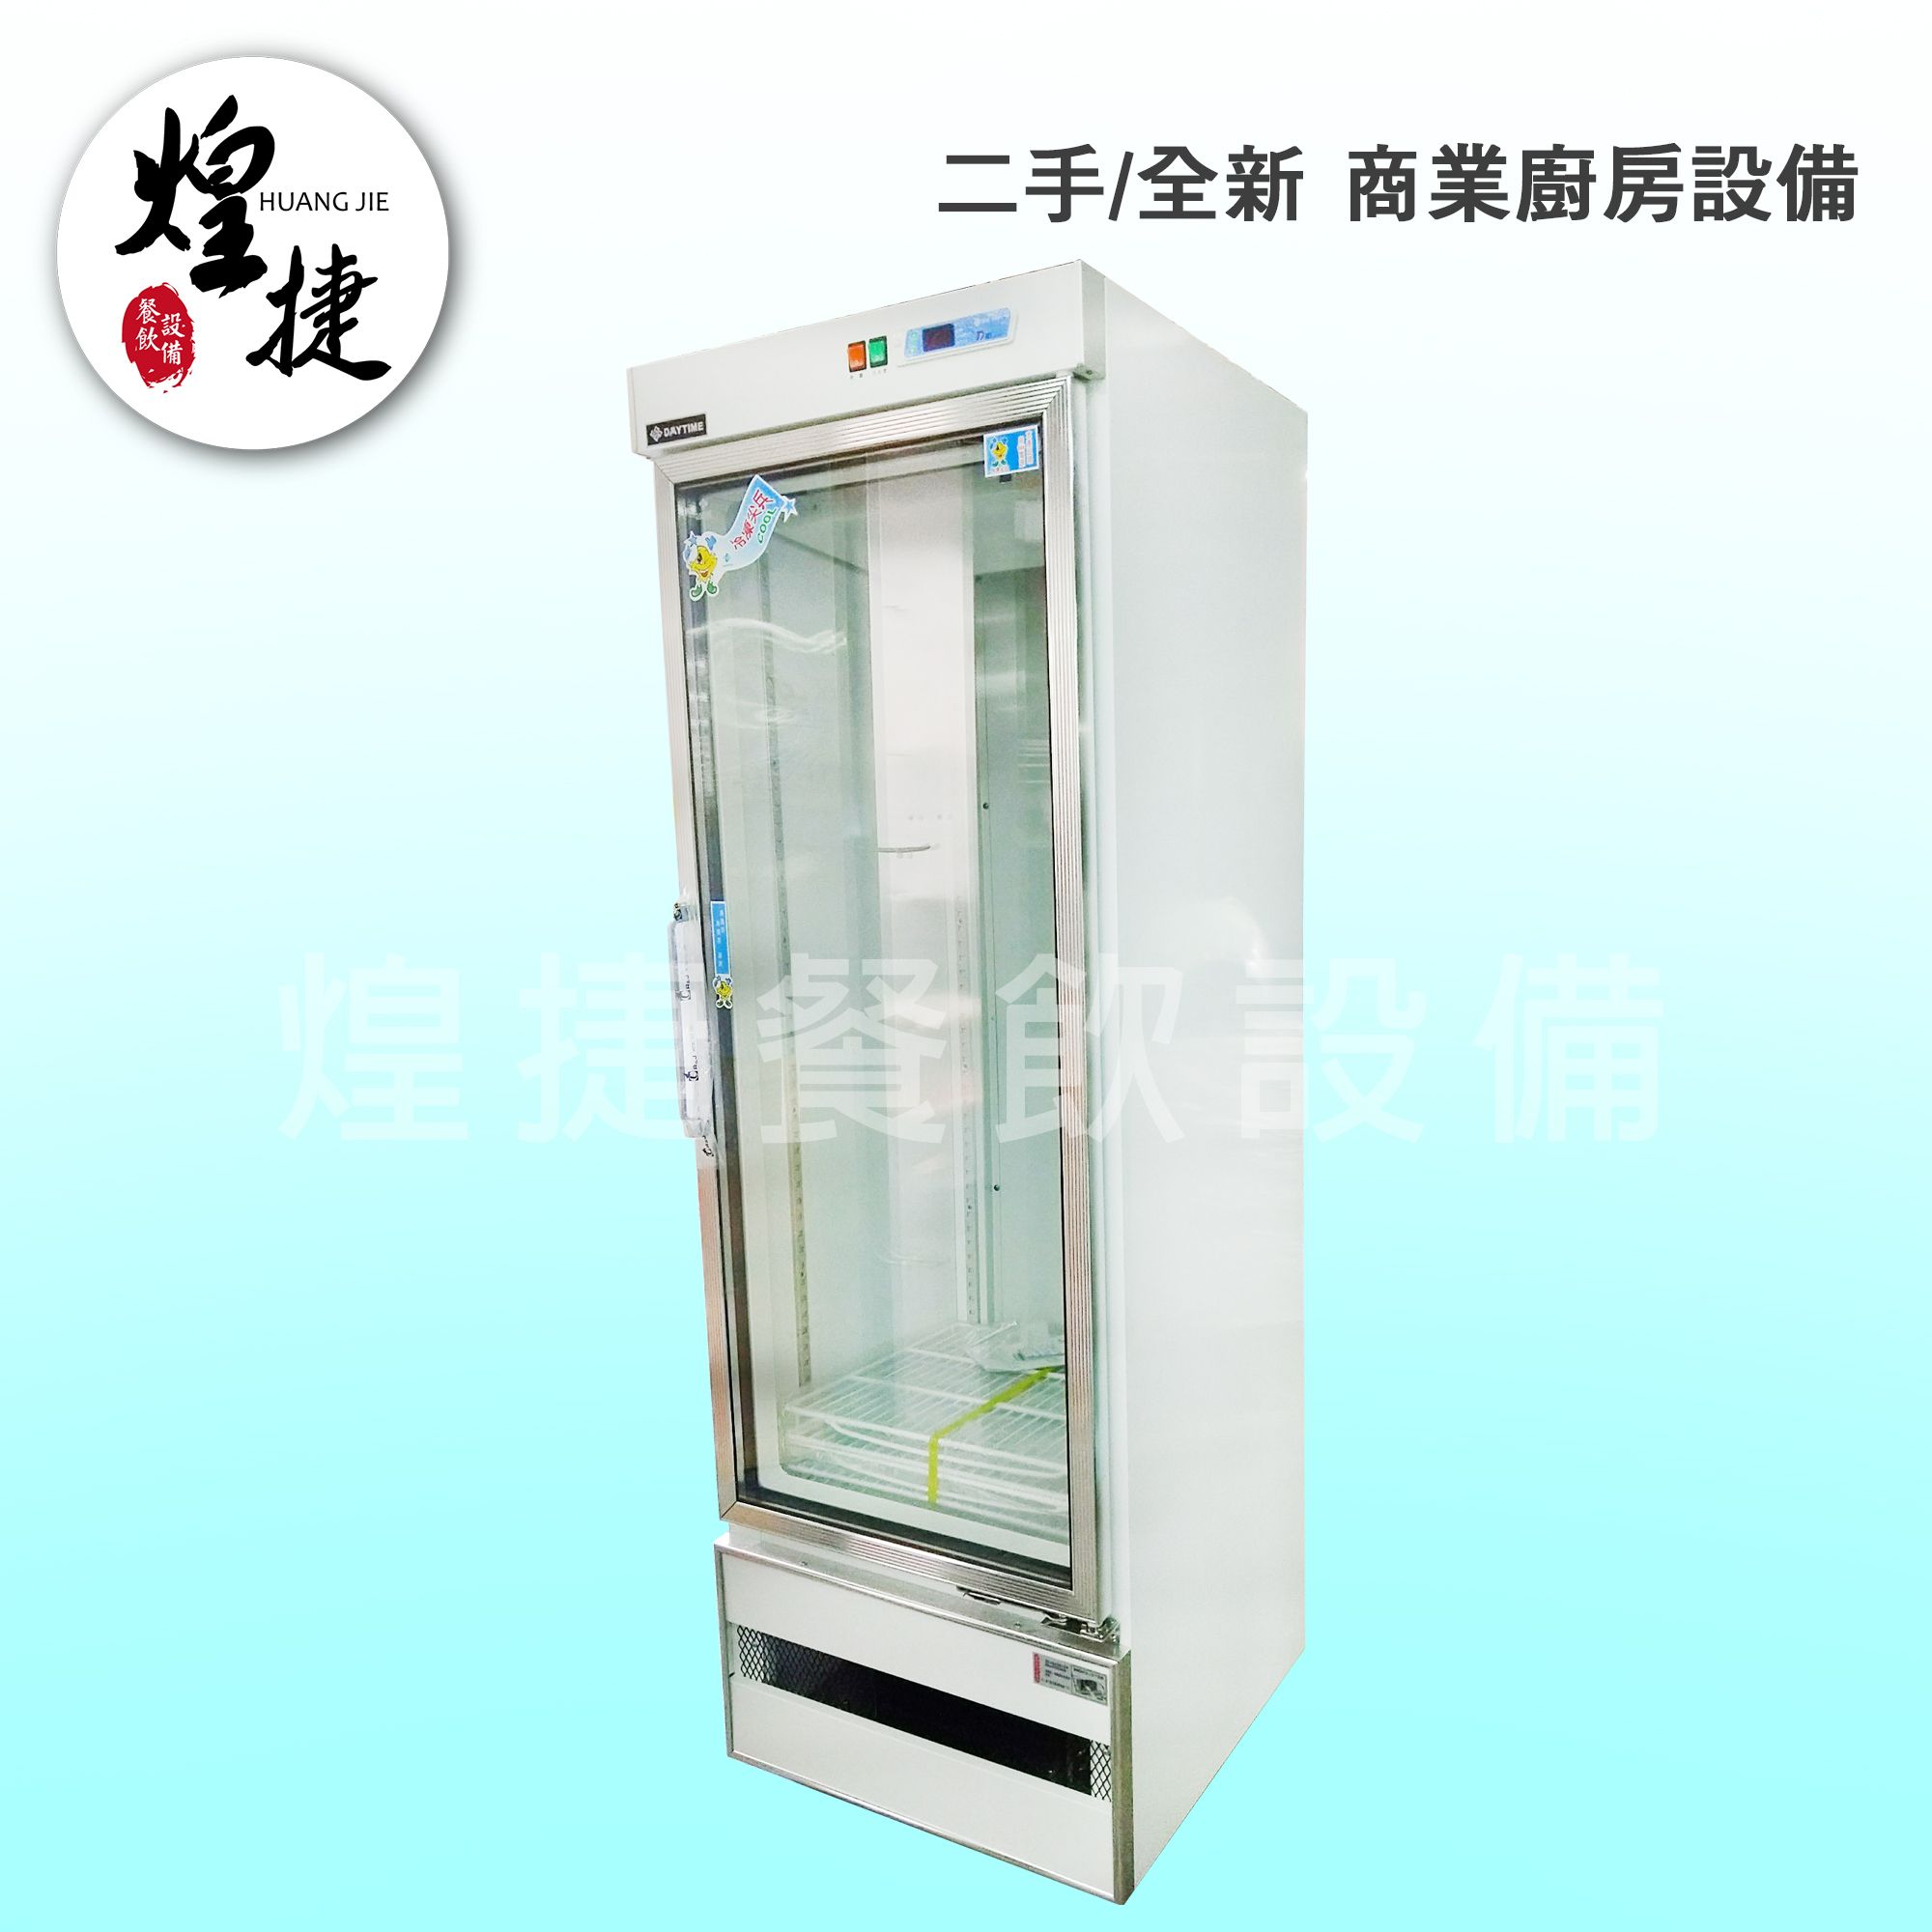 500L單門展示冰箱-2.jpg